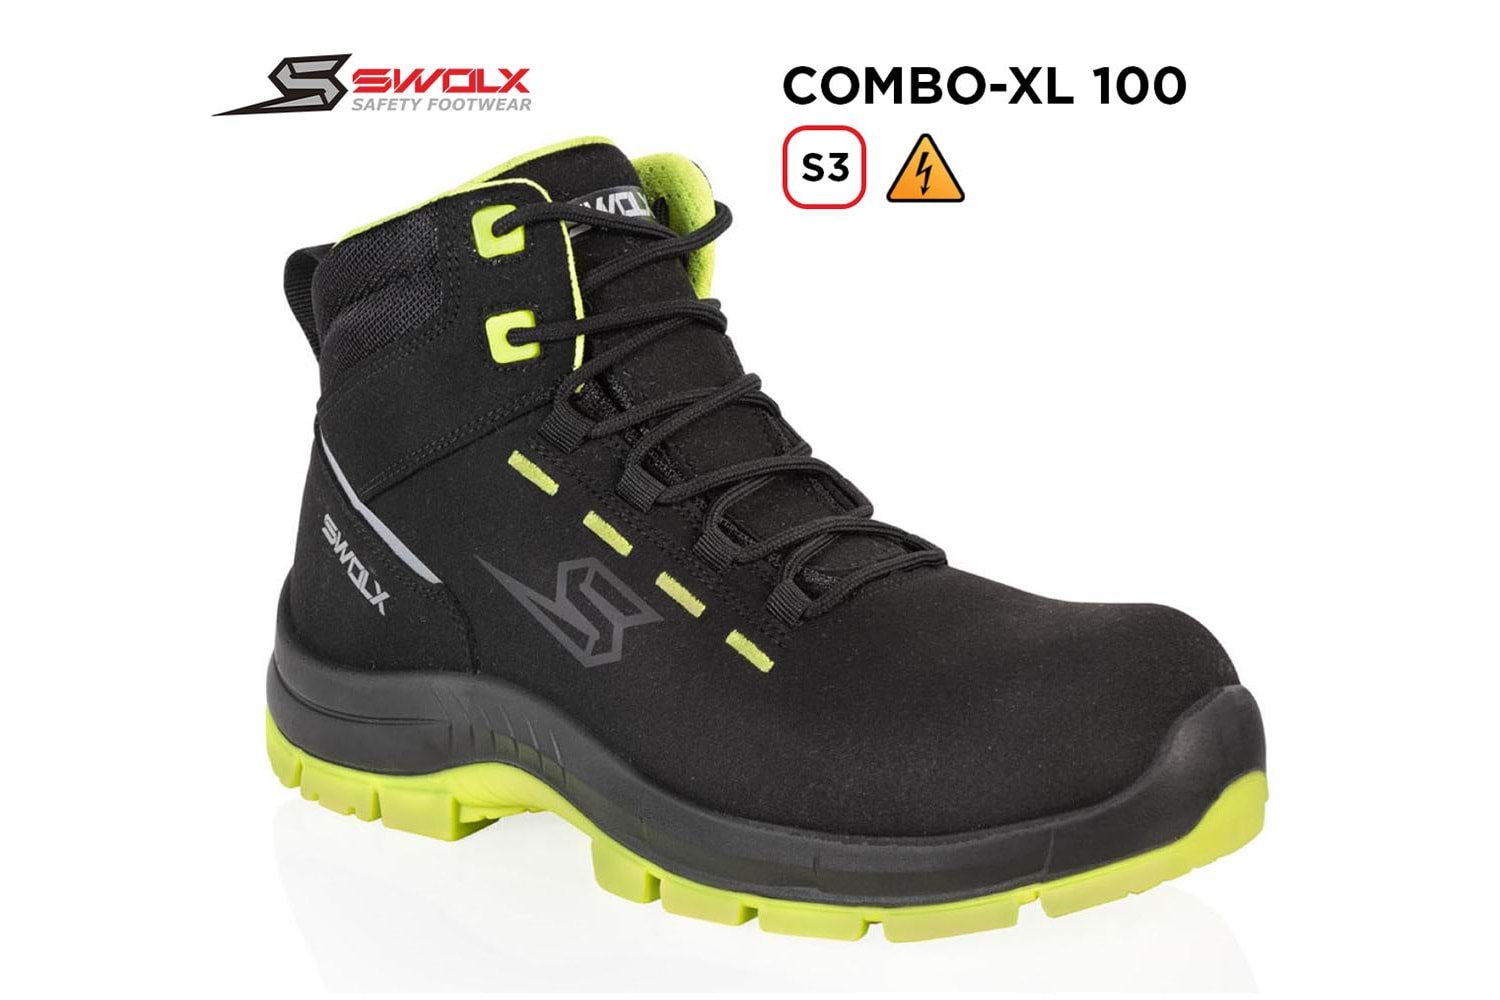 Swolx İş Ayakkabısı - Combo-Xl 100 S3 Elektrikçi - 42